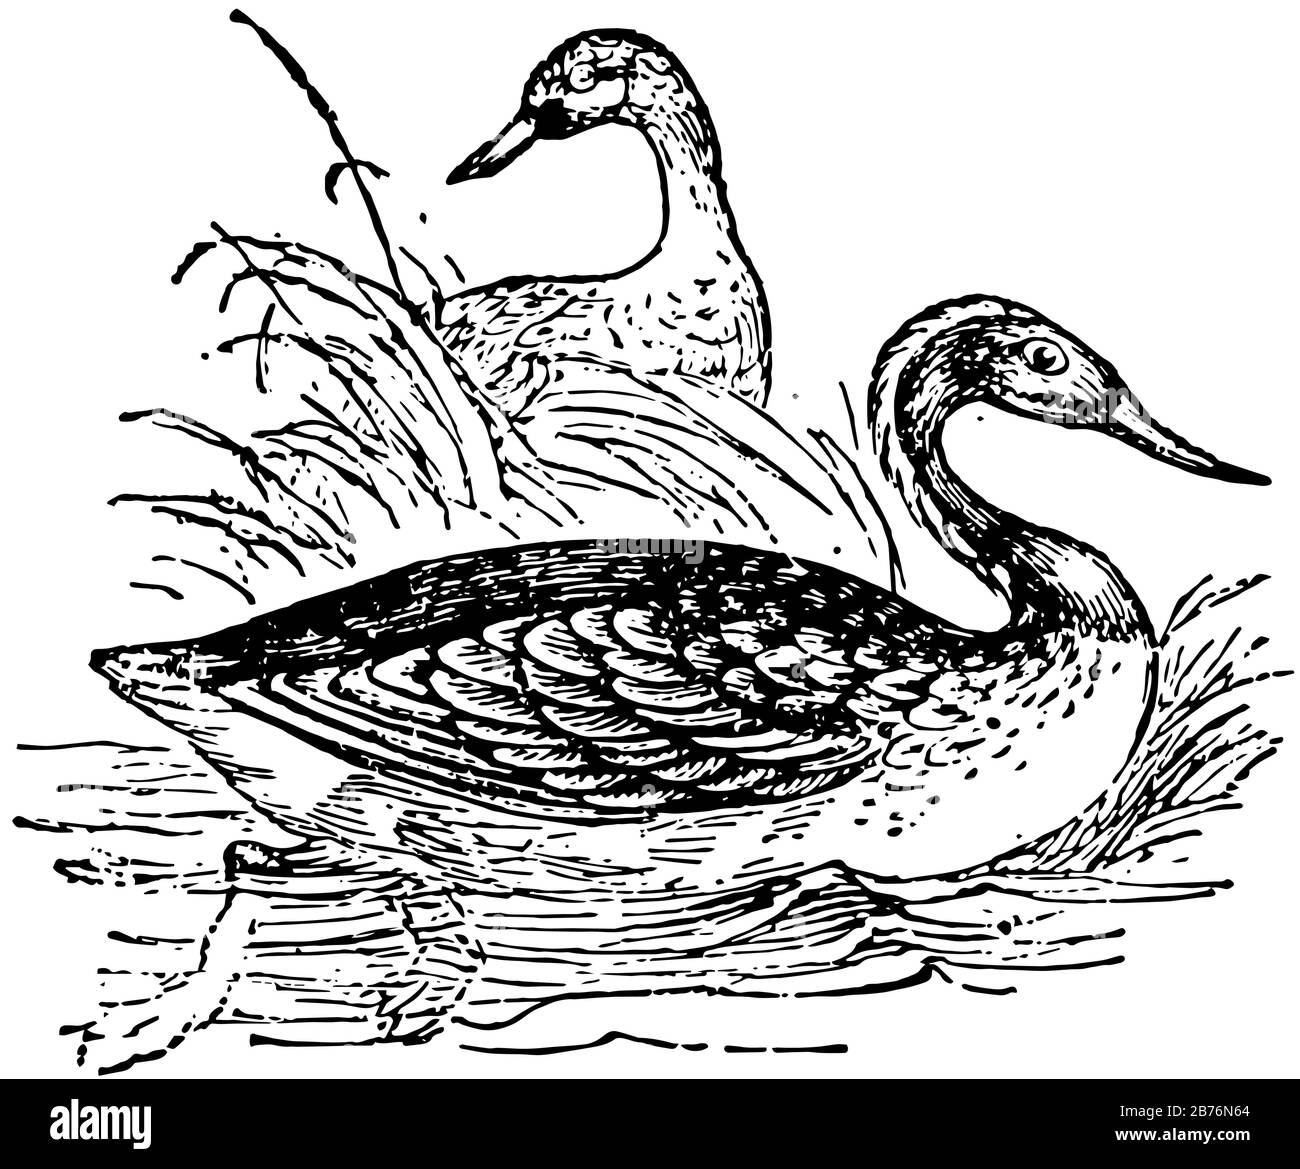 Il subacqueo è Un uccello acquatico trovato in molte parti del Nord America e dell'Europa del Nord, disegno di linea vintage o illustrazione di incisione. Illustrazione Vettoriale